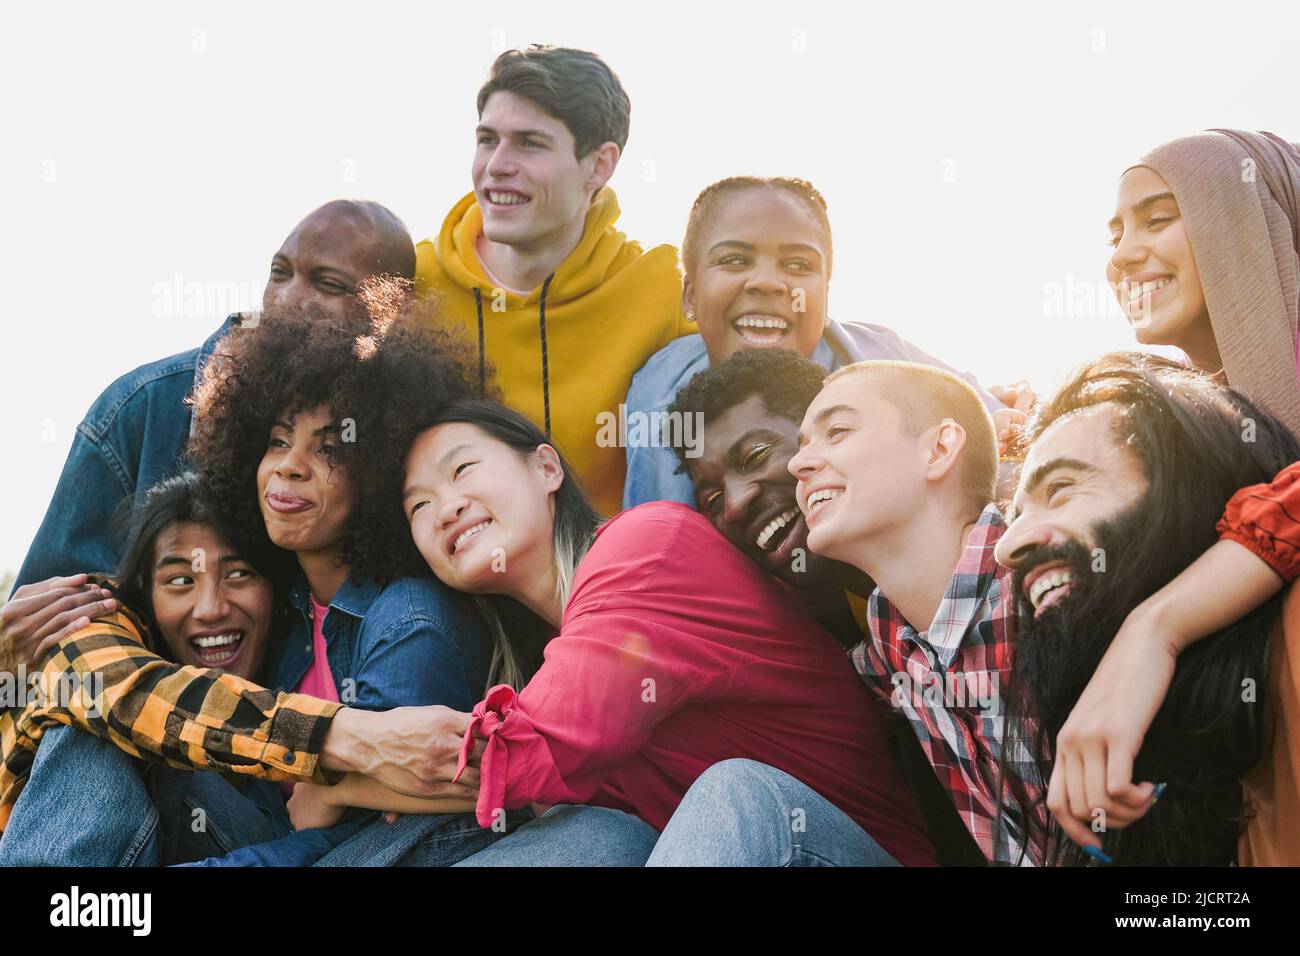 Multiethnische vielfältige Gruppe von Menschen, die Spaß im Freien - Diversity Lifestyle-Konzept - Fokus auf Glatze Mädchen Gesicht Stockfoto